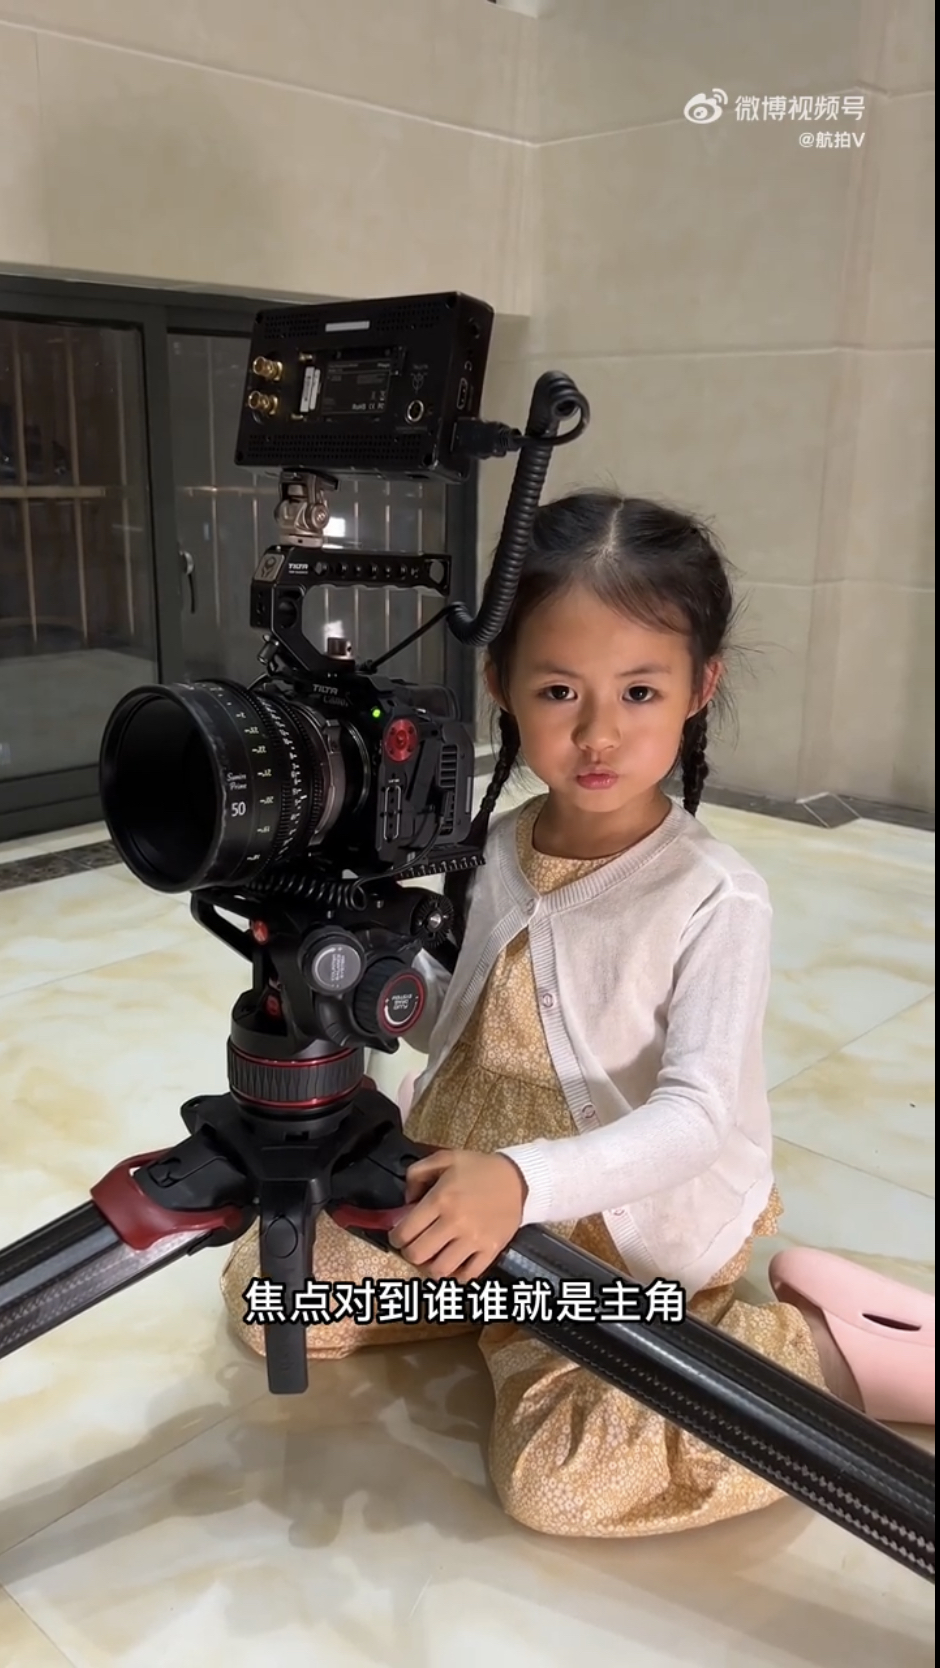 专业摄影师爸爸向萌萌传授拍摄技巧。